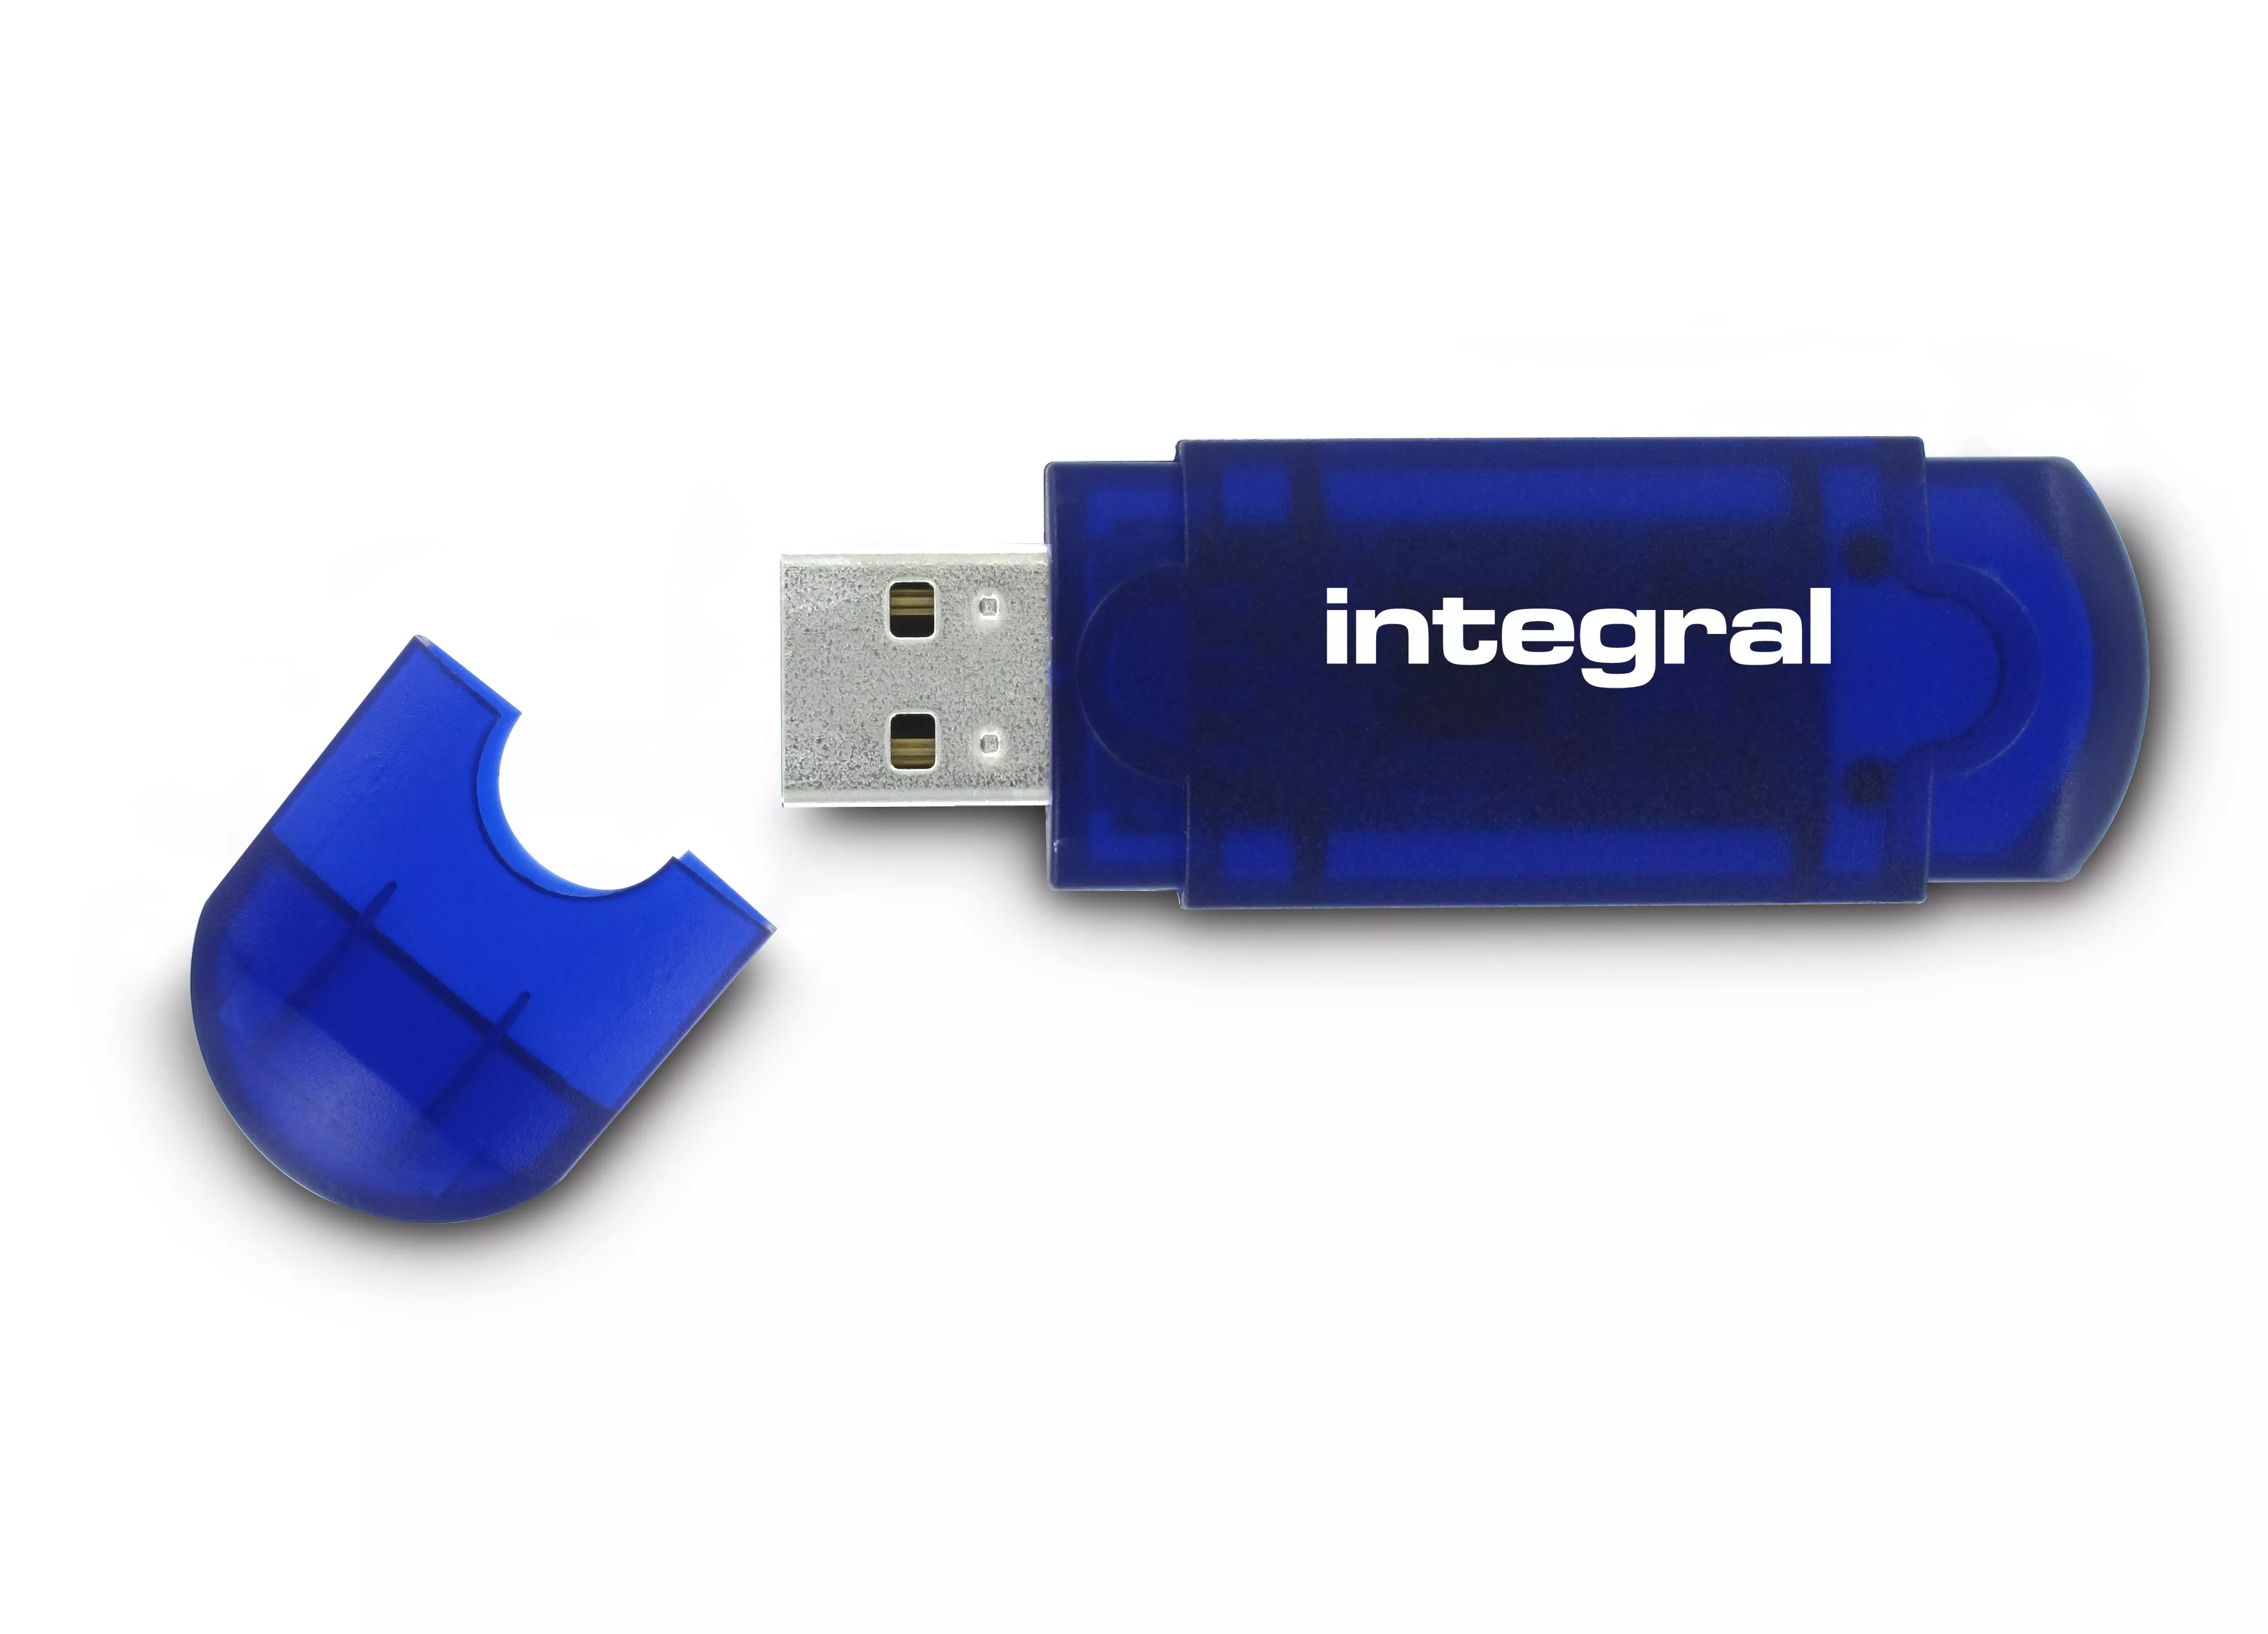 Achat Integral 64GB USB2.0 DRIVE EVO BLUE INTEGRAL et autres produits de la marque Integral